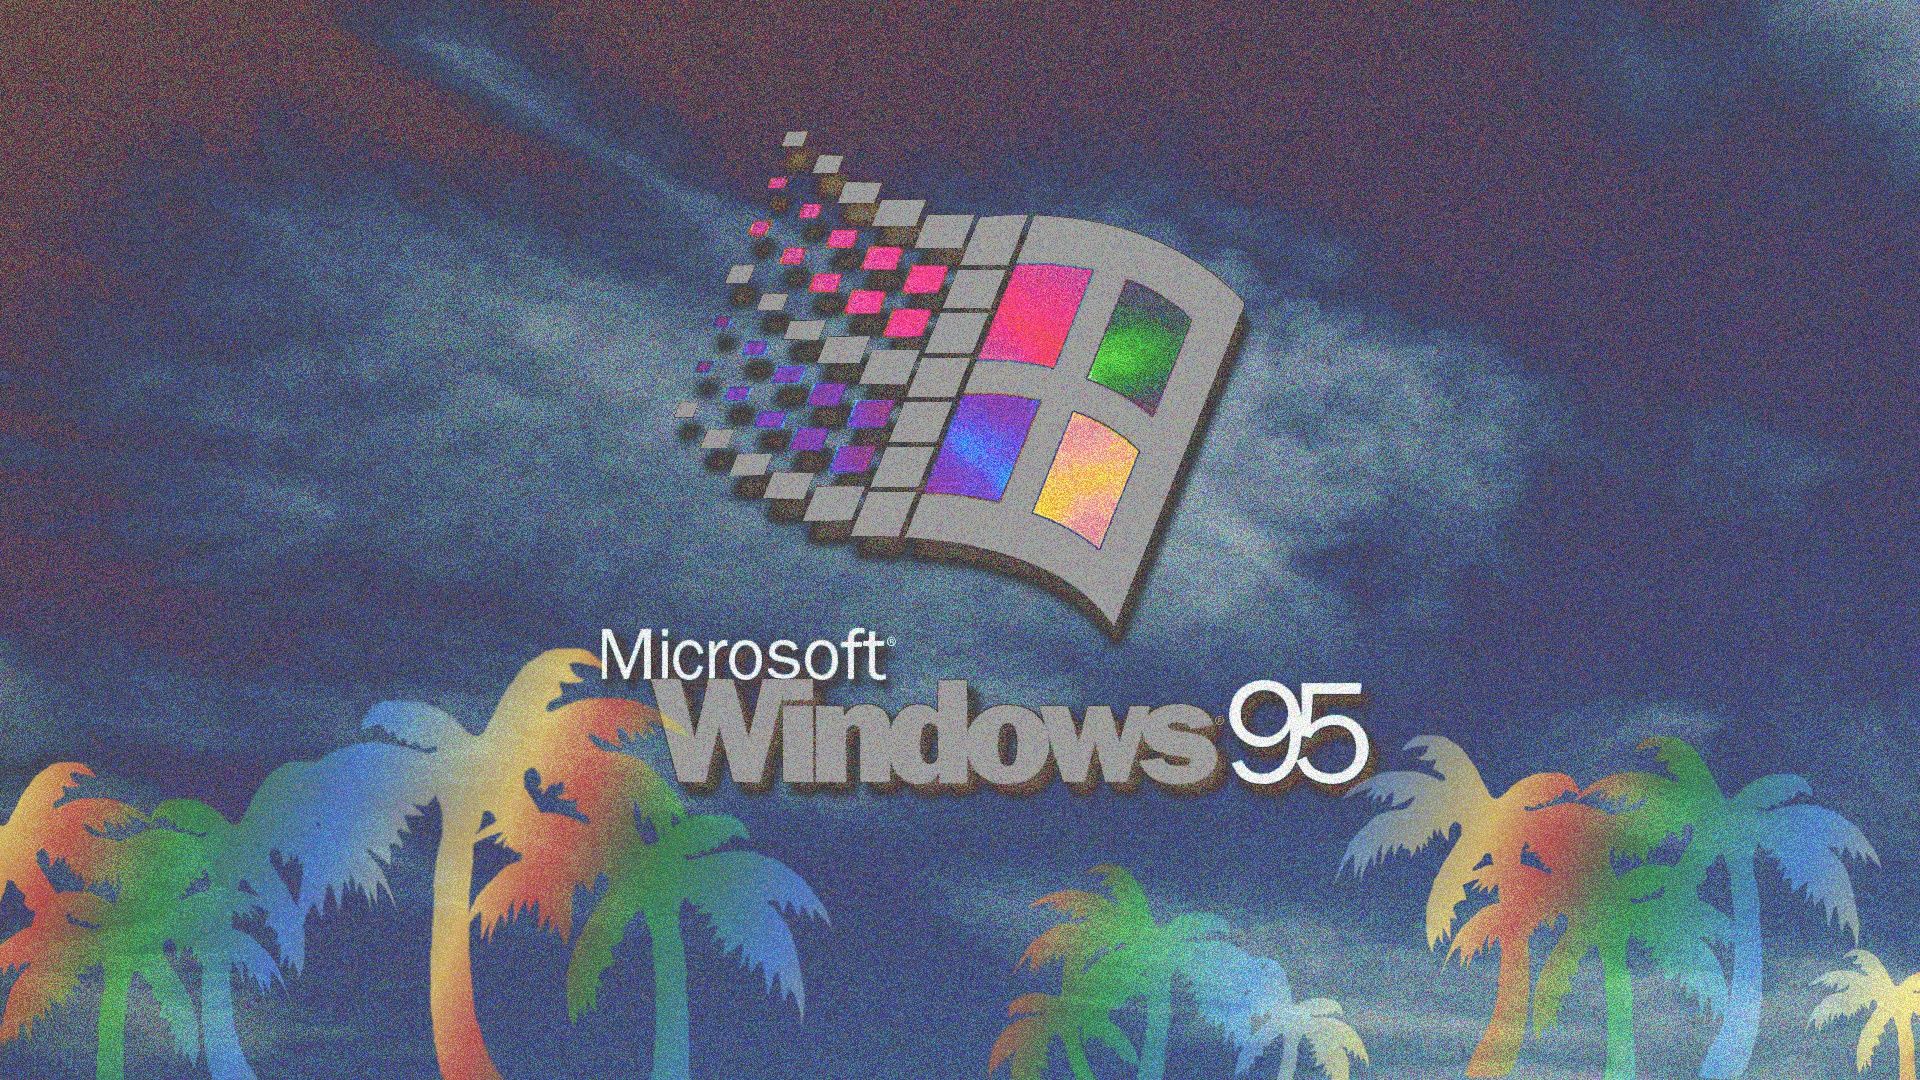 Картинки в стиле Windows 95